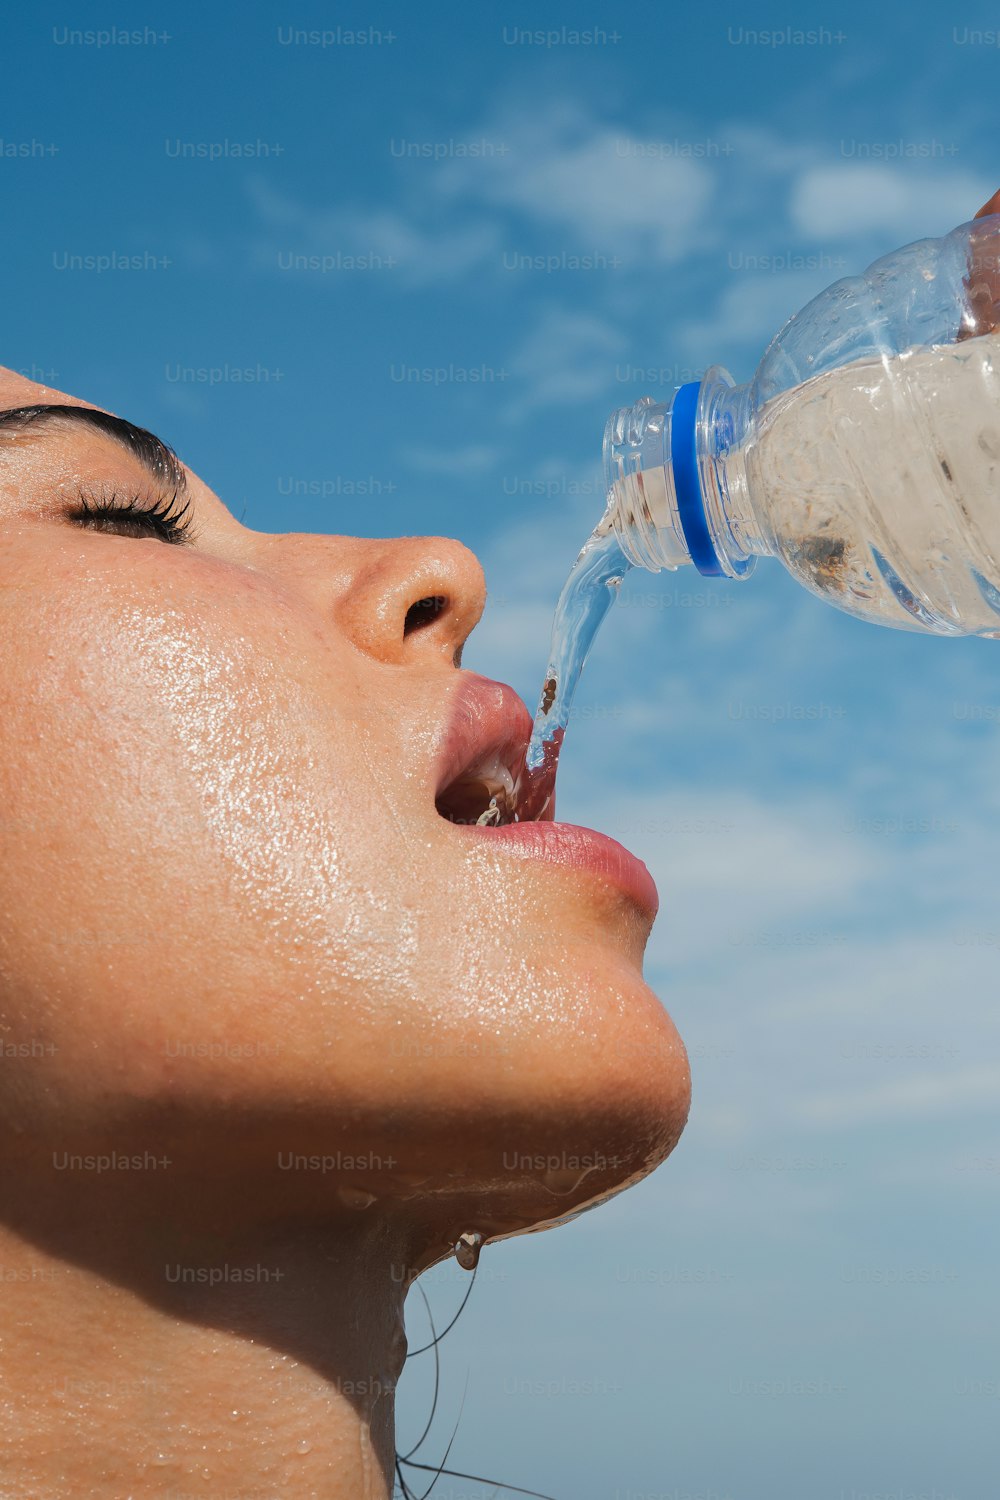 Una donna che beve acqua da una bottiglia di plastica